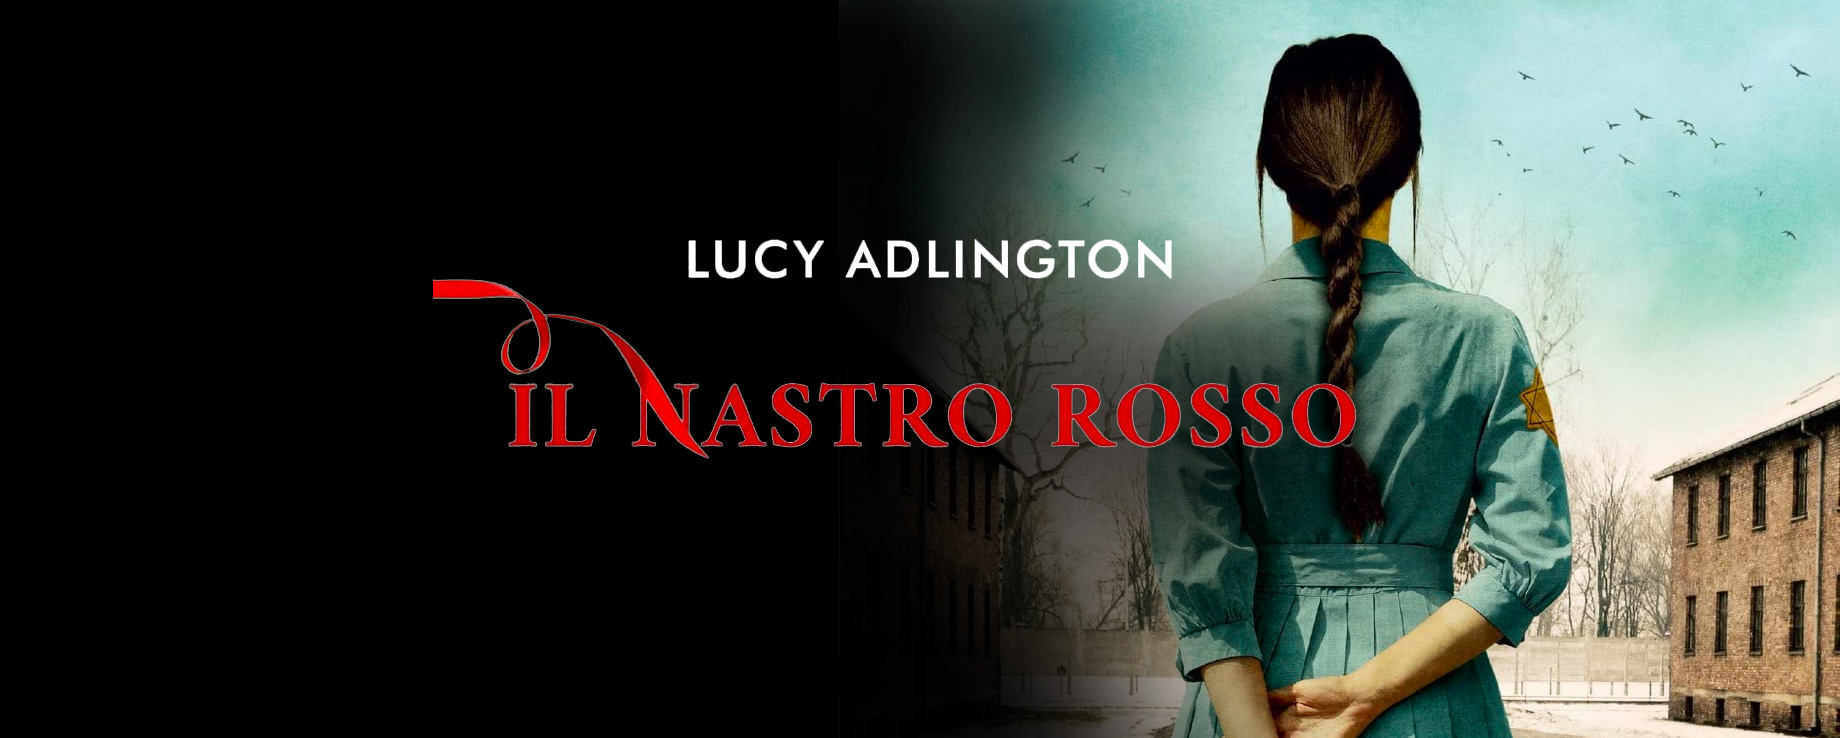 Intervista a Lucy Adlington, autrice di “Il nastro rosso”